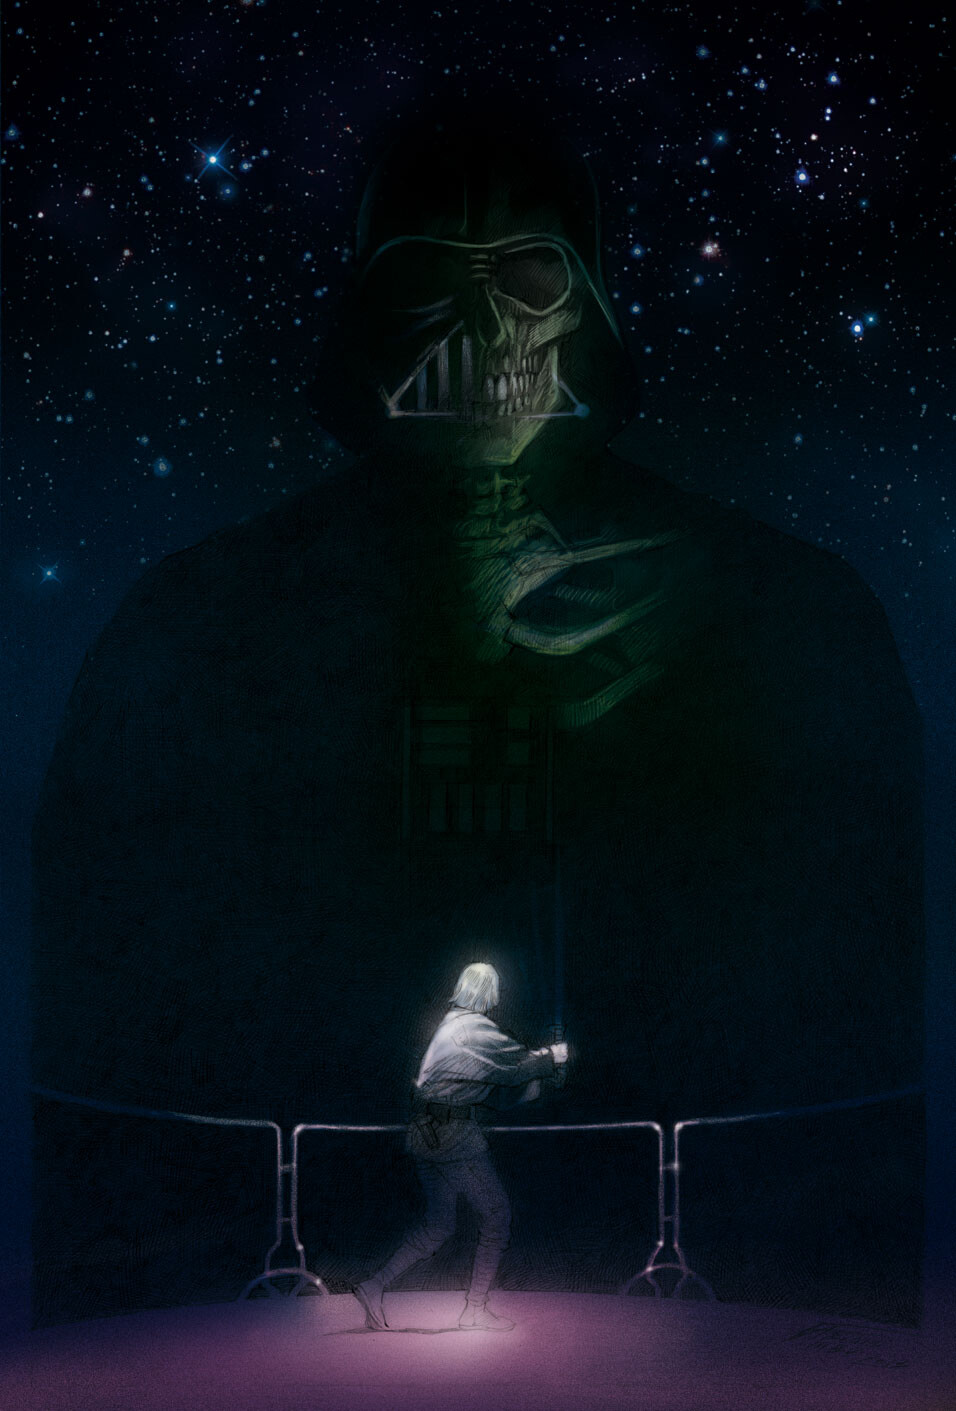 Fan art - Illustration - Star Wars